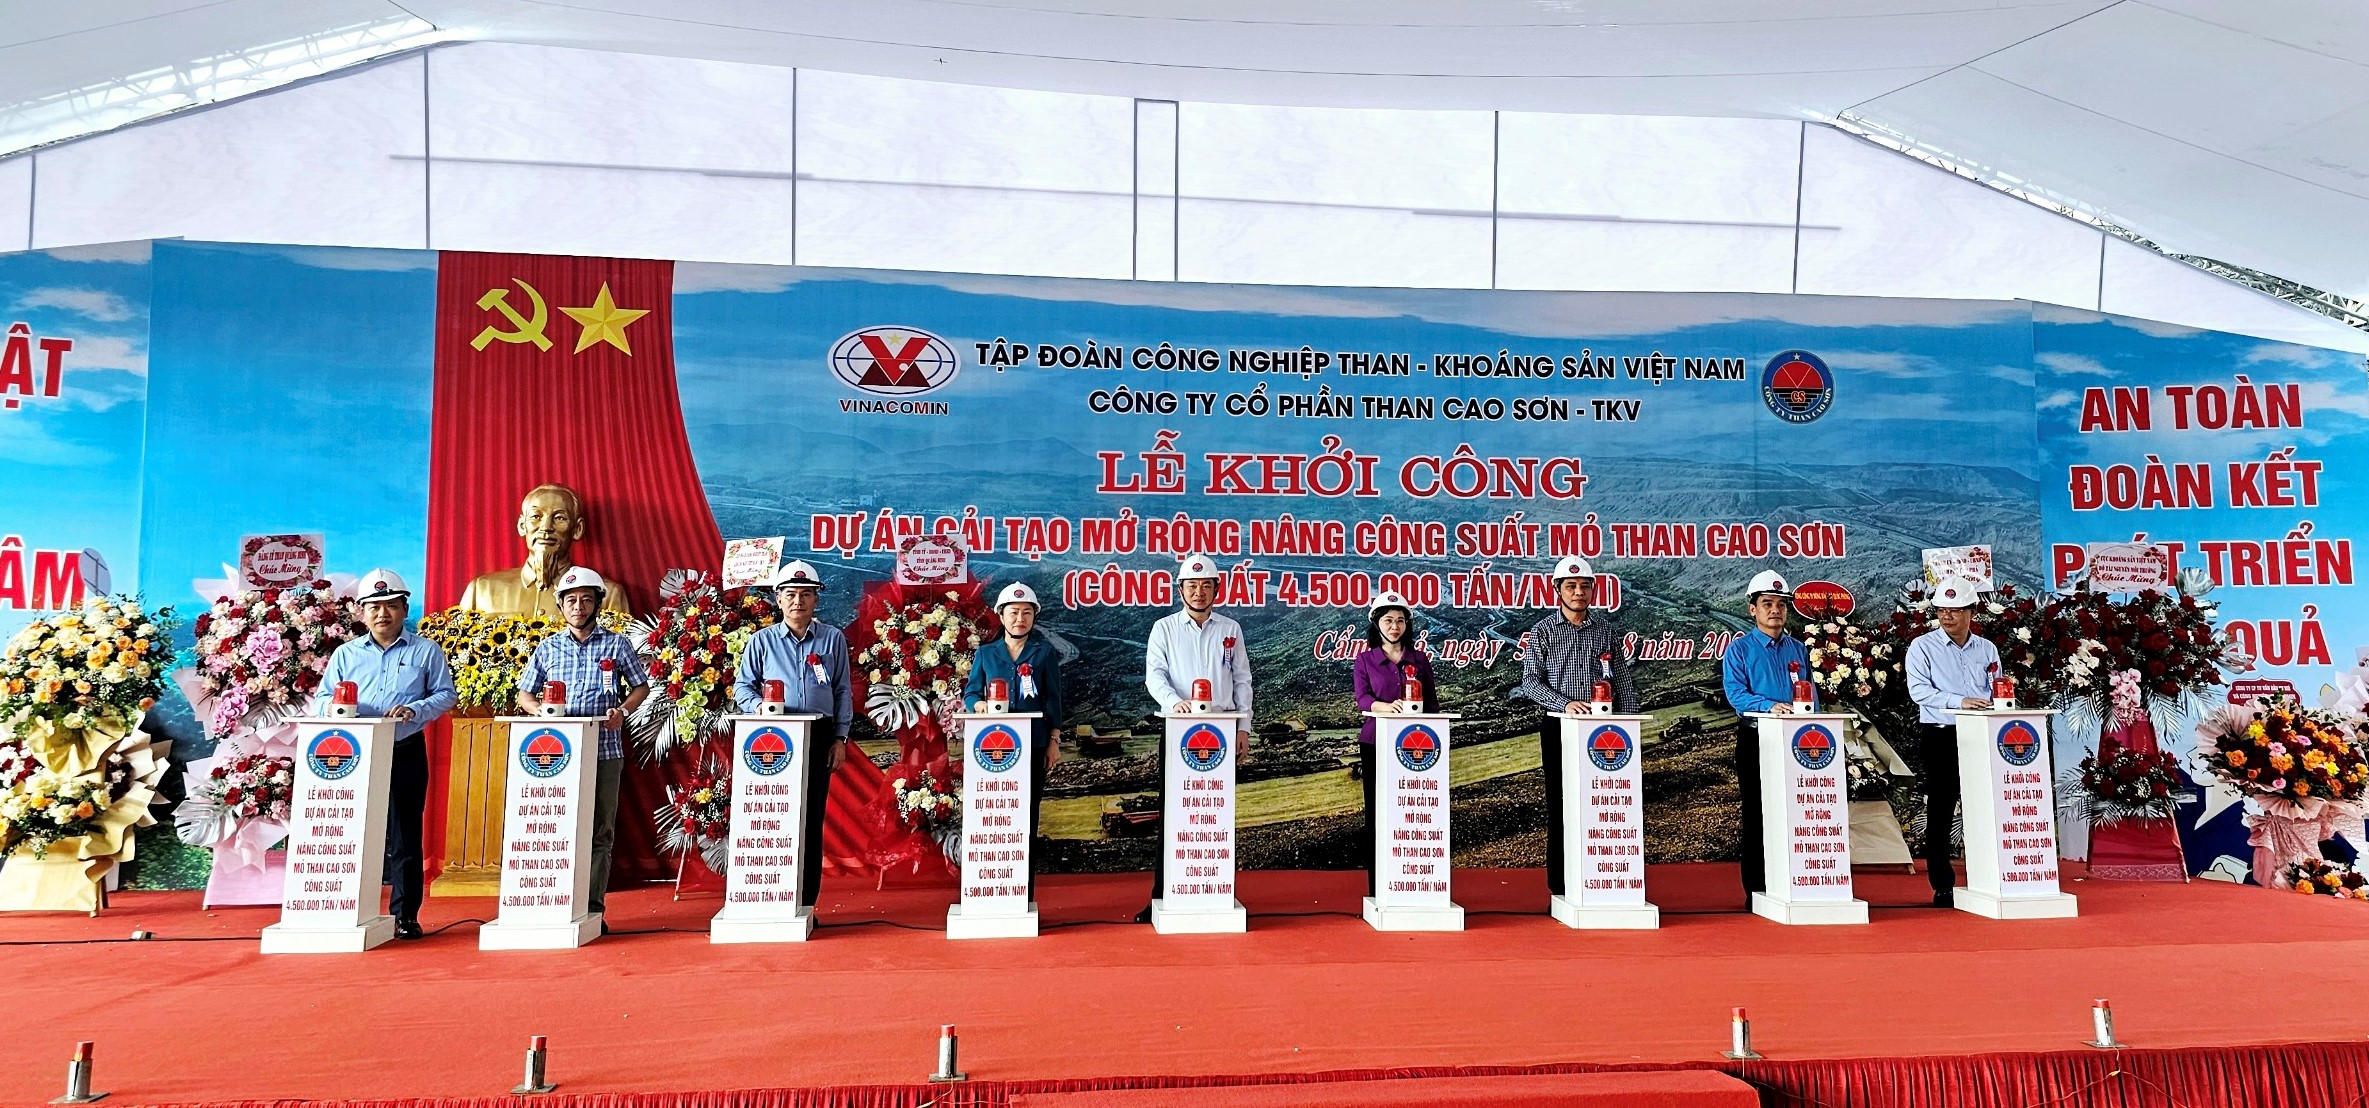 Khởi công Dự án cải tạo mở rộng nâng công suất mỏ than Cao Sơn 1.829 tỷ đồng